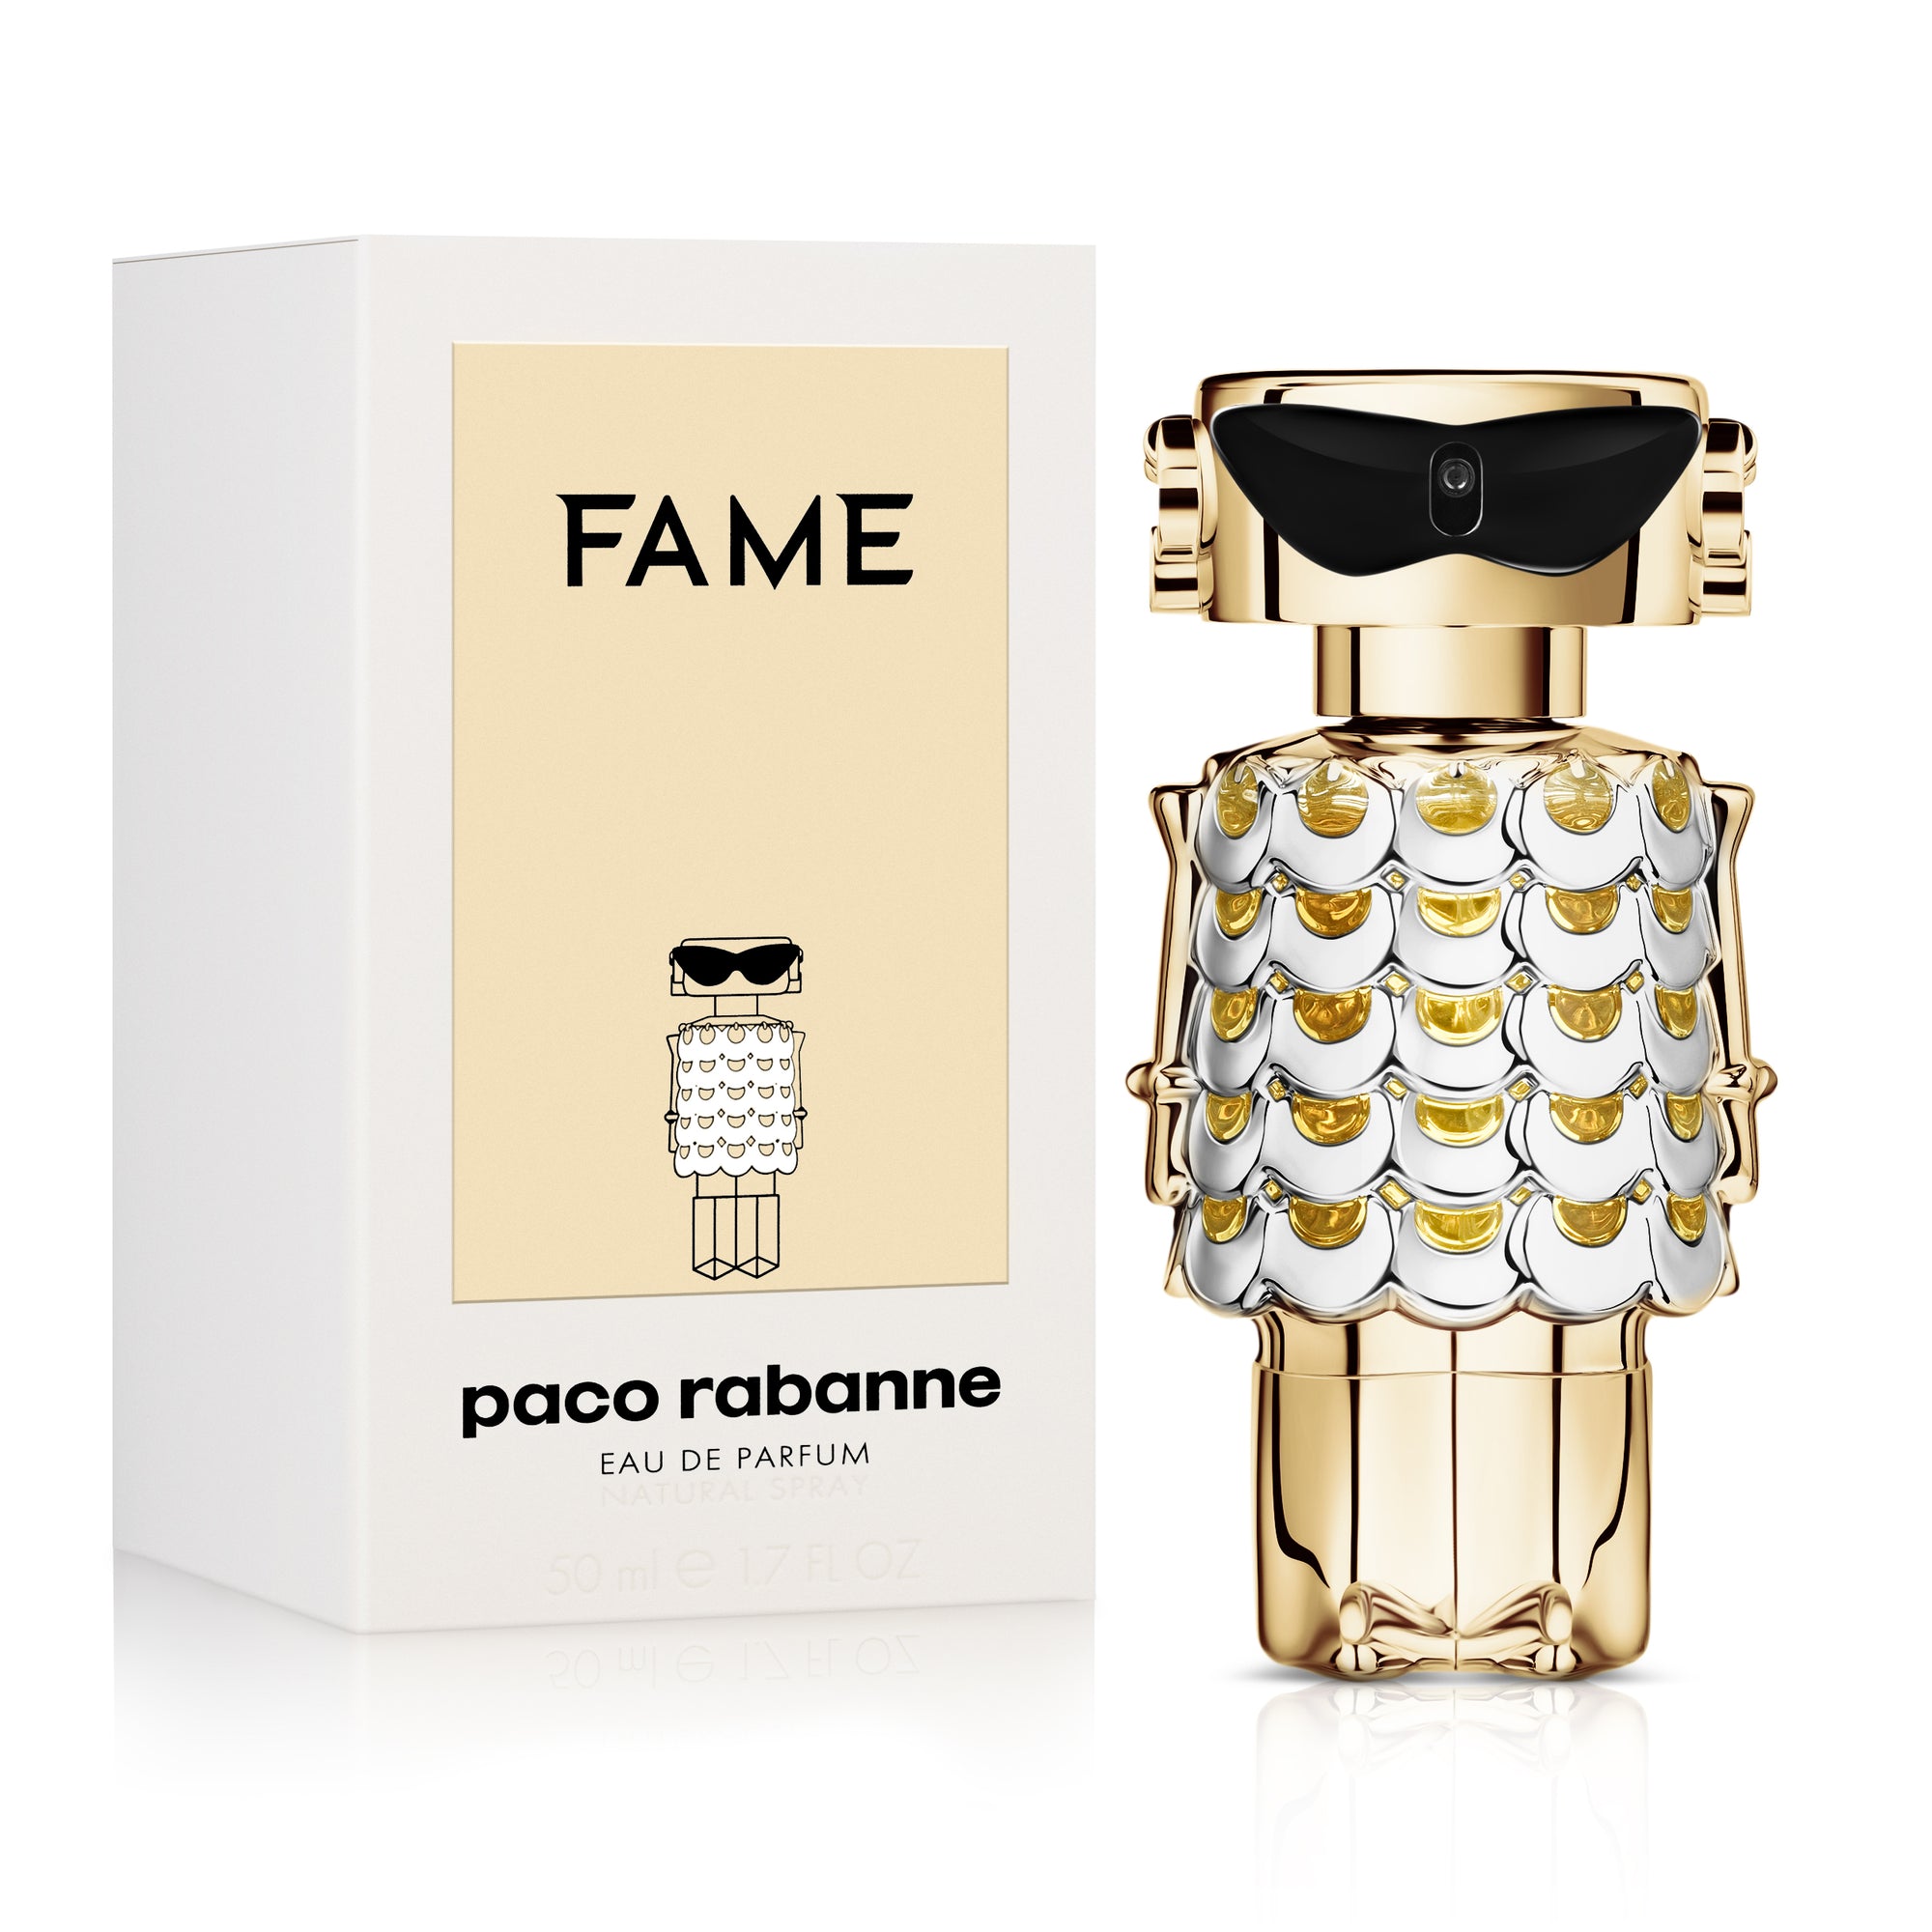 Paco Rabanne | Fame Eau de Parfum